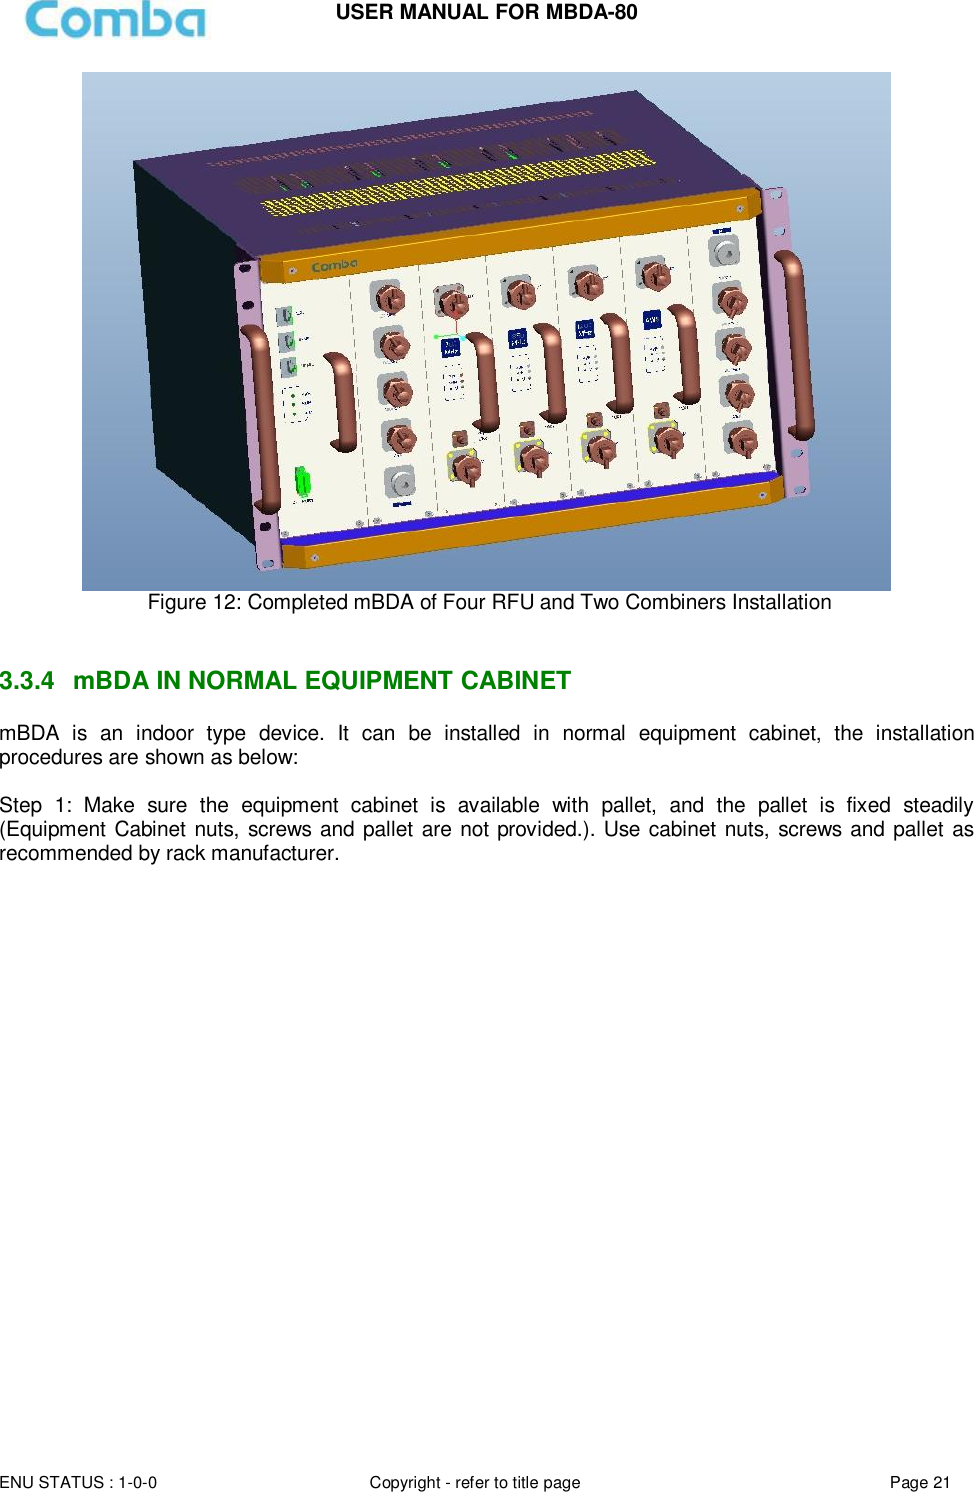 Page 21 of Comba Telecom MBDA-80 mBDA Band Seletive Repeater User Manual 